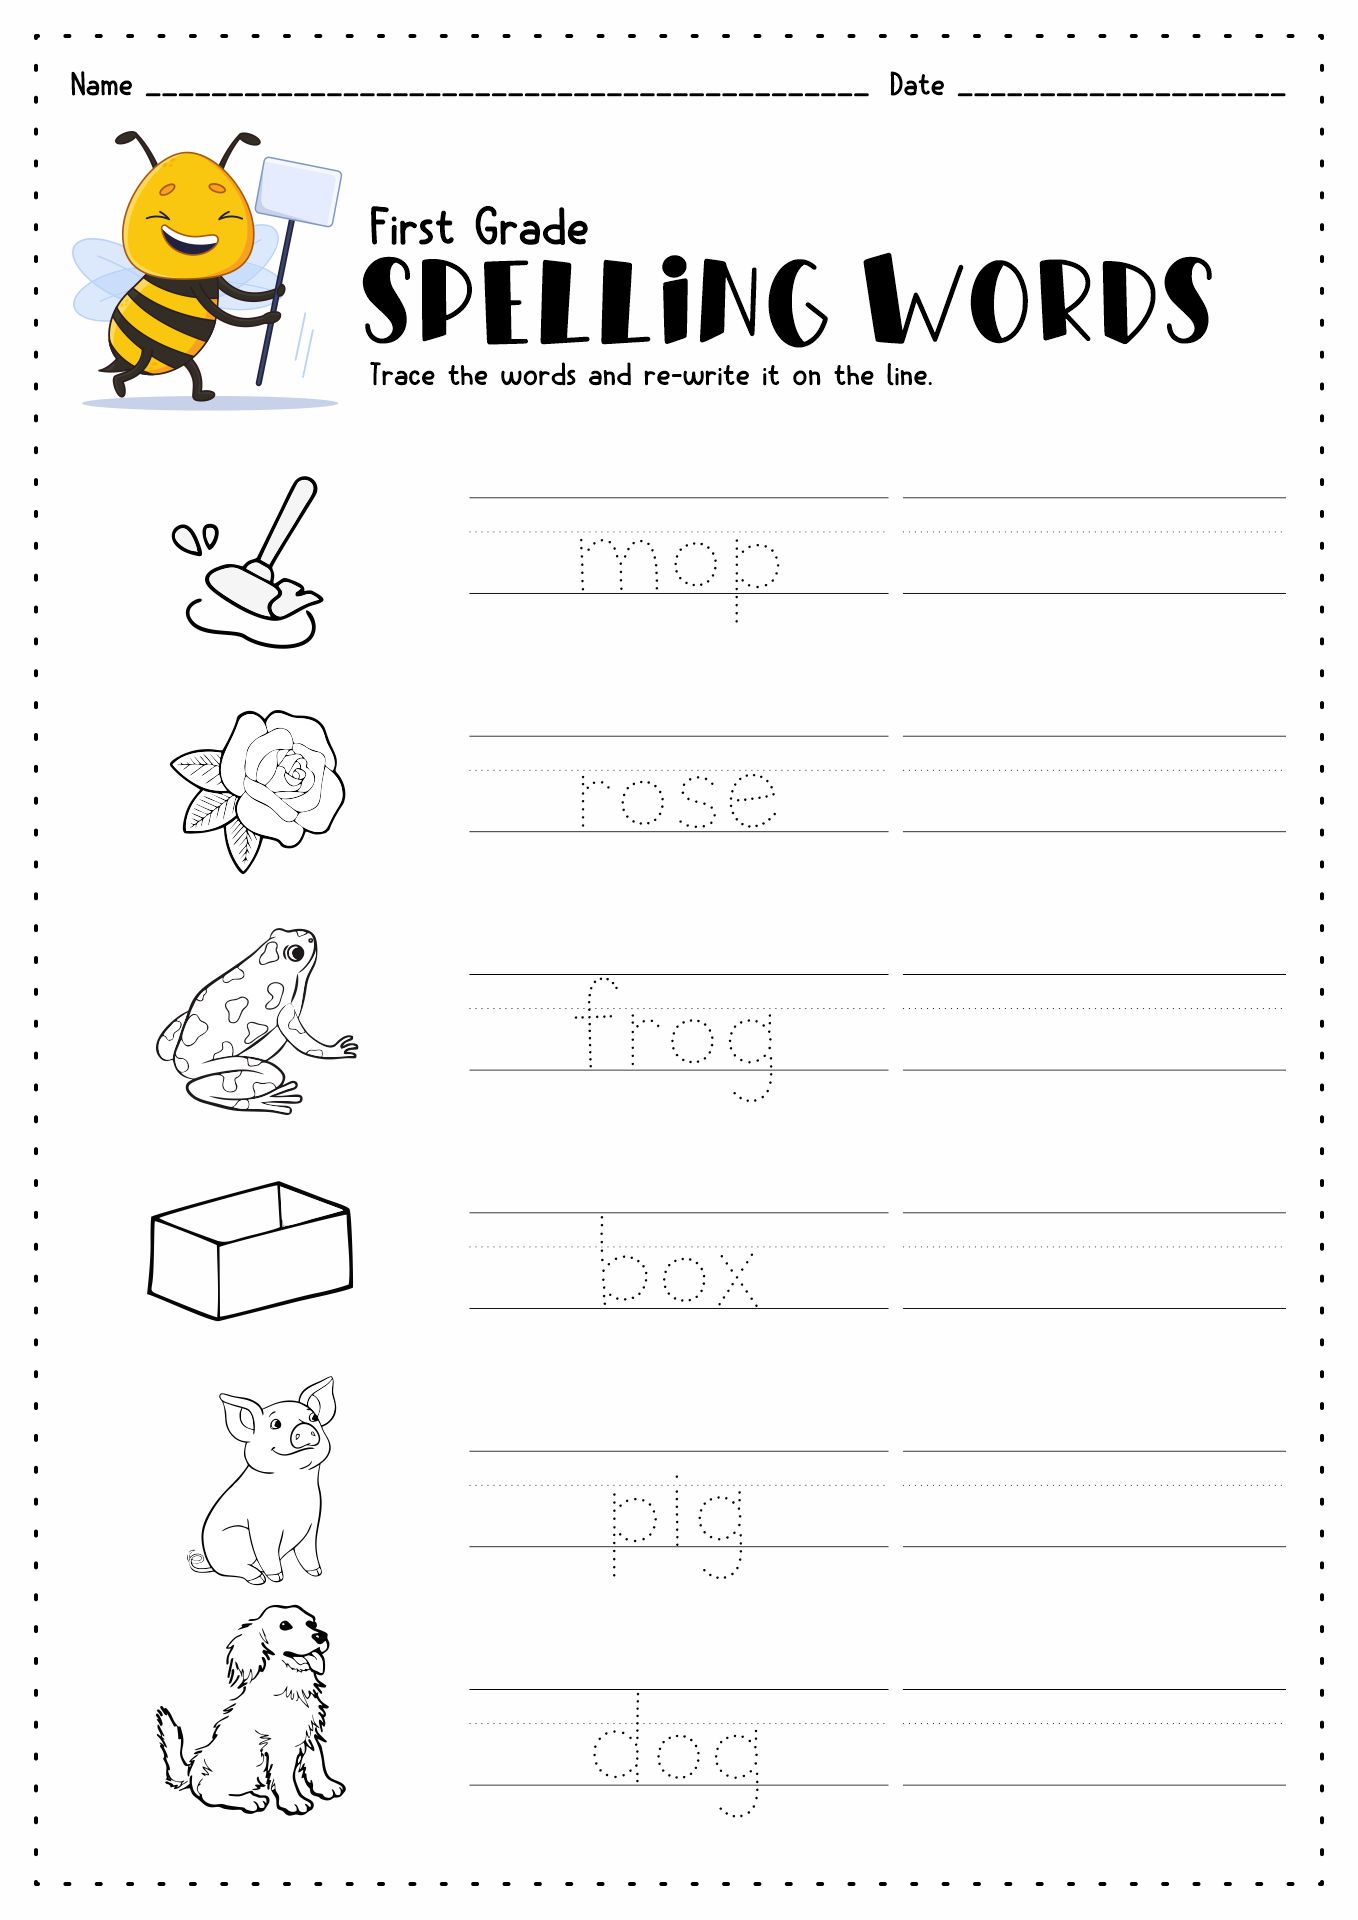 3rd-grade-spelling-words-worksheets-2nd-grade-spelling-words-best